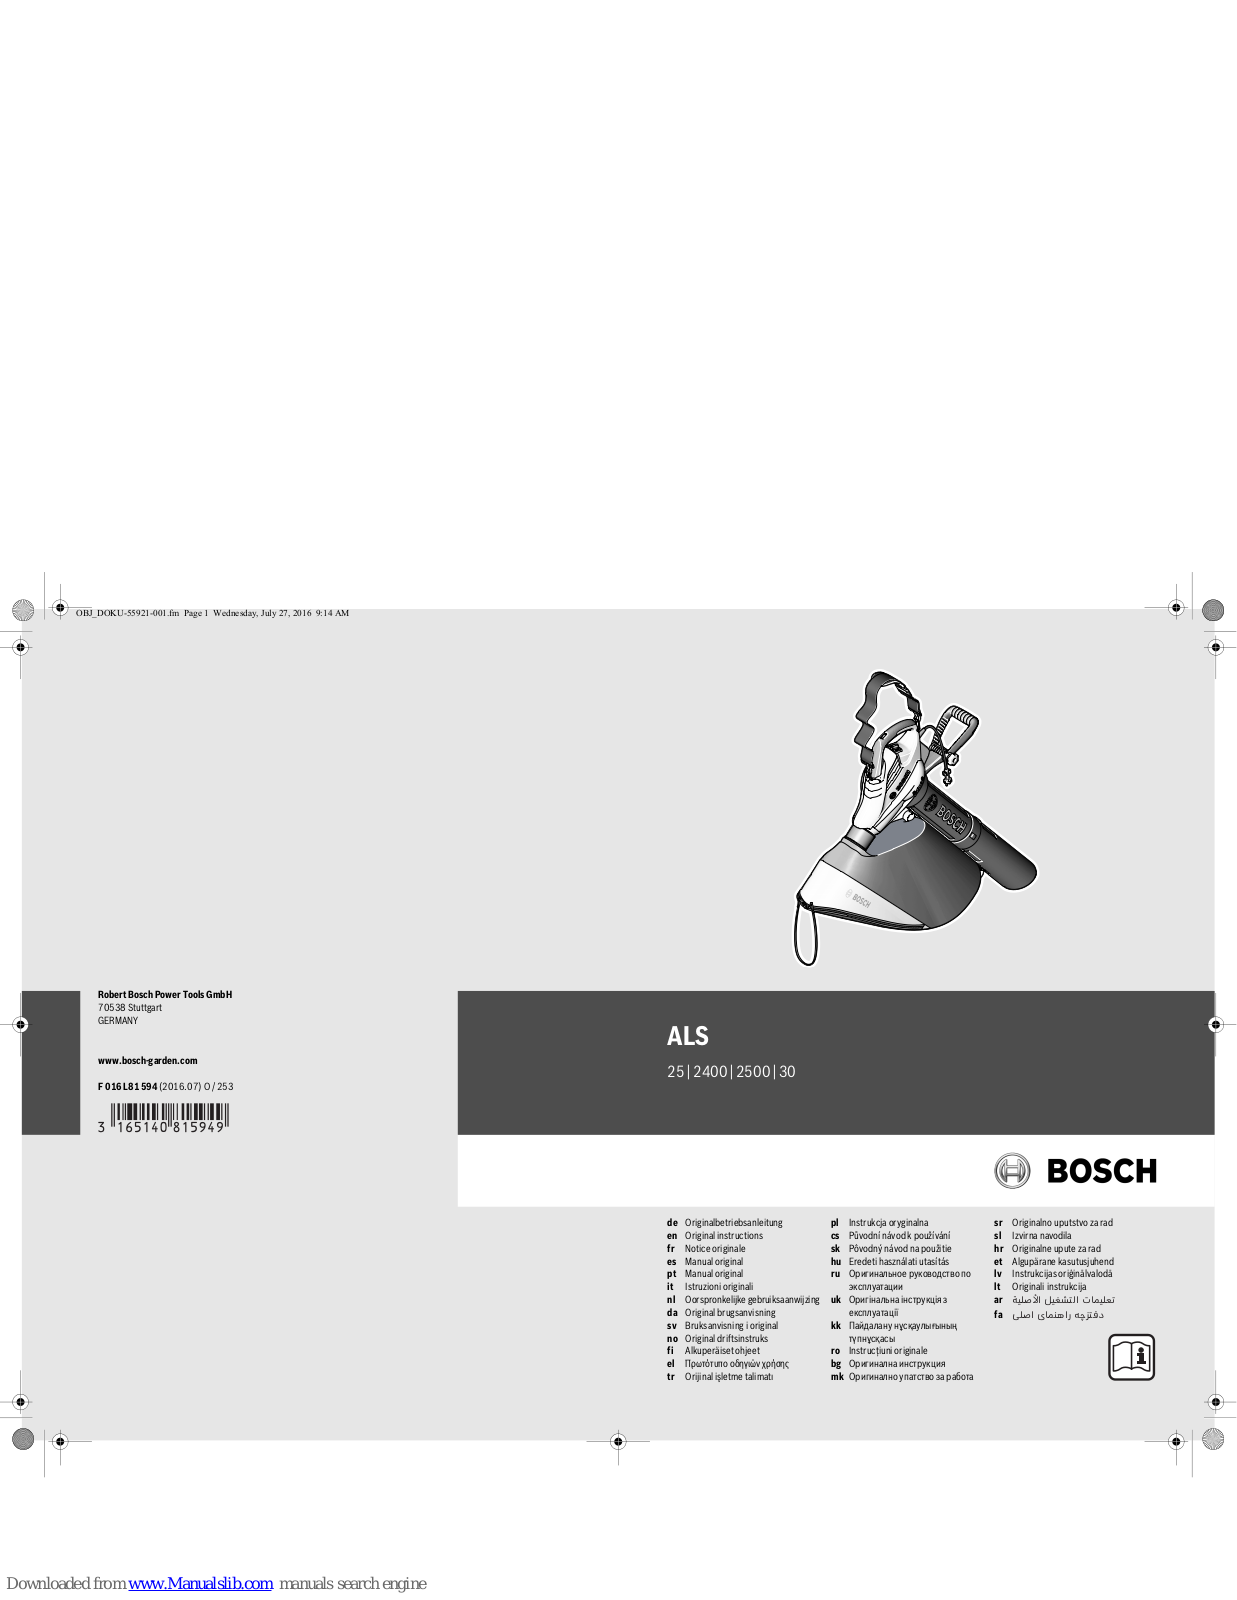 Bosch ALS 25, ALS 2400, ALS 2500 Original Instructions Manual